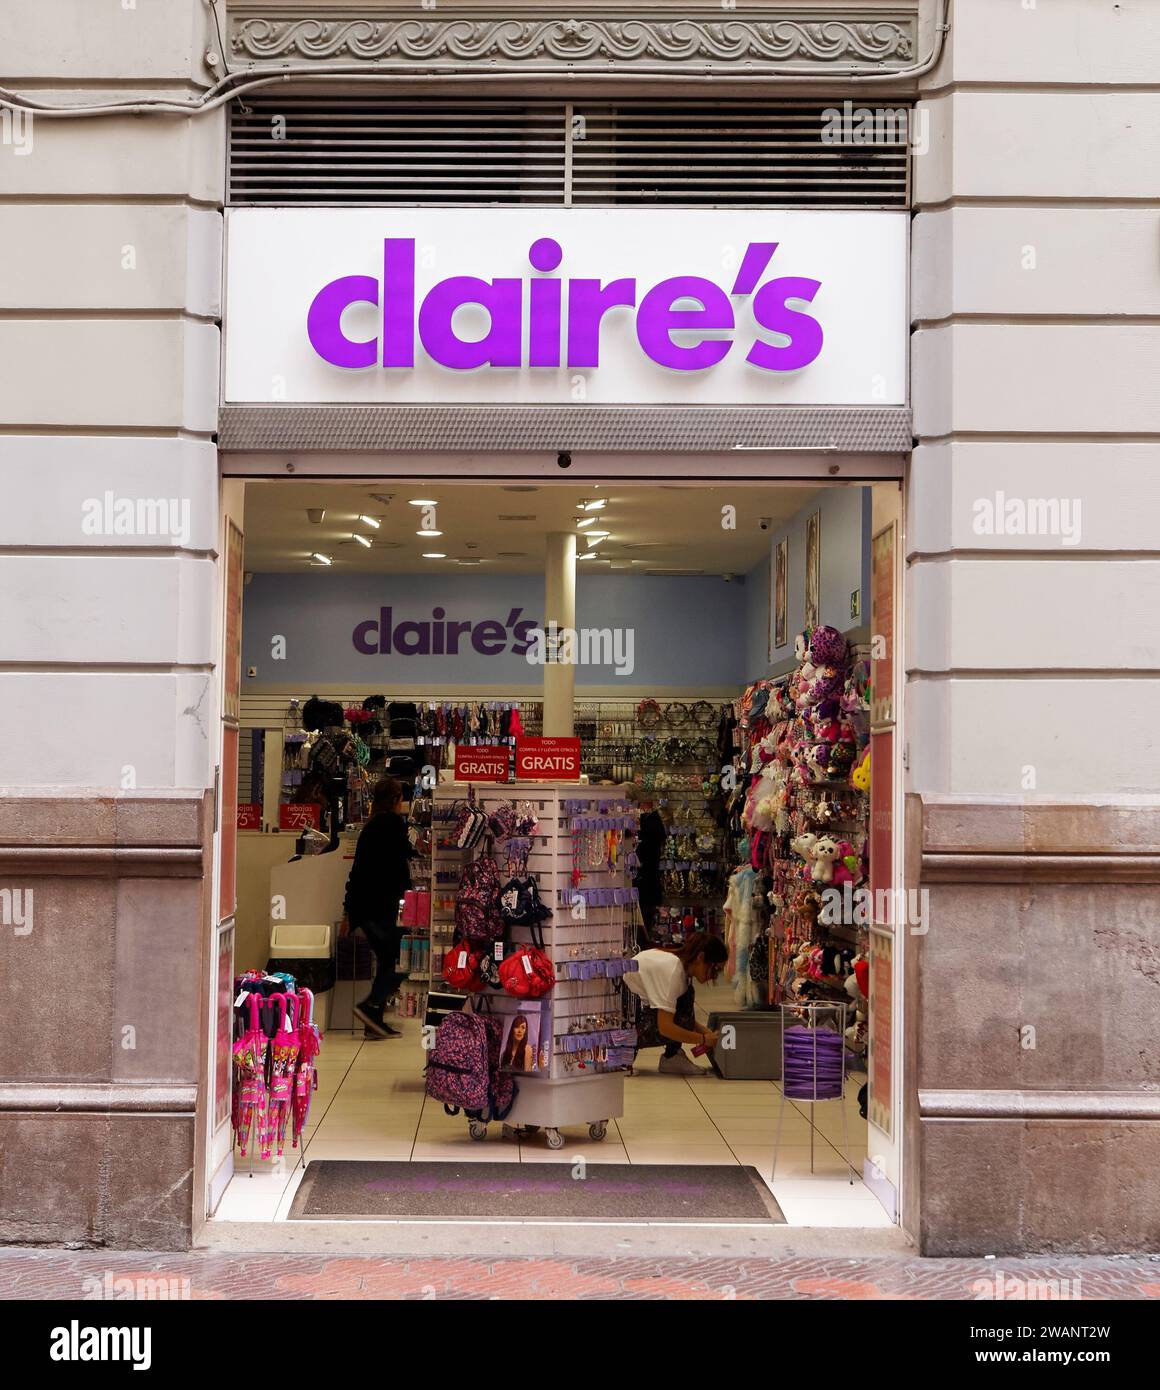 VALENCIA, SPAIN - MARCH 22, 2016. Claire's store in Valencia, Spain. Stock Photo